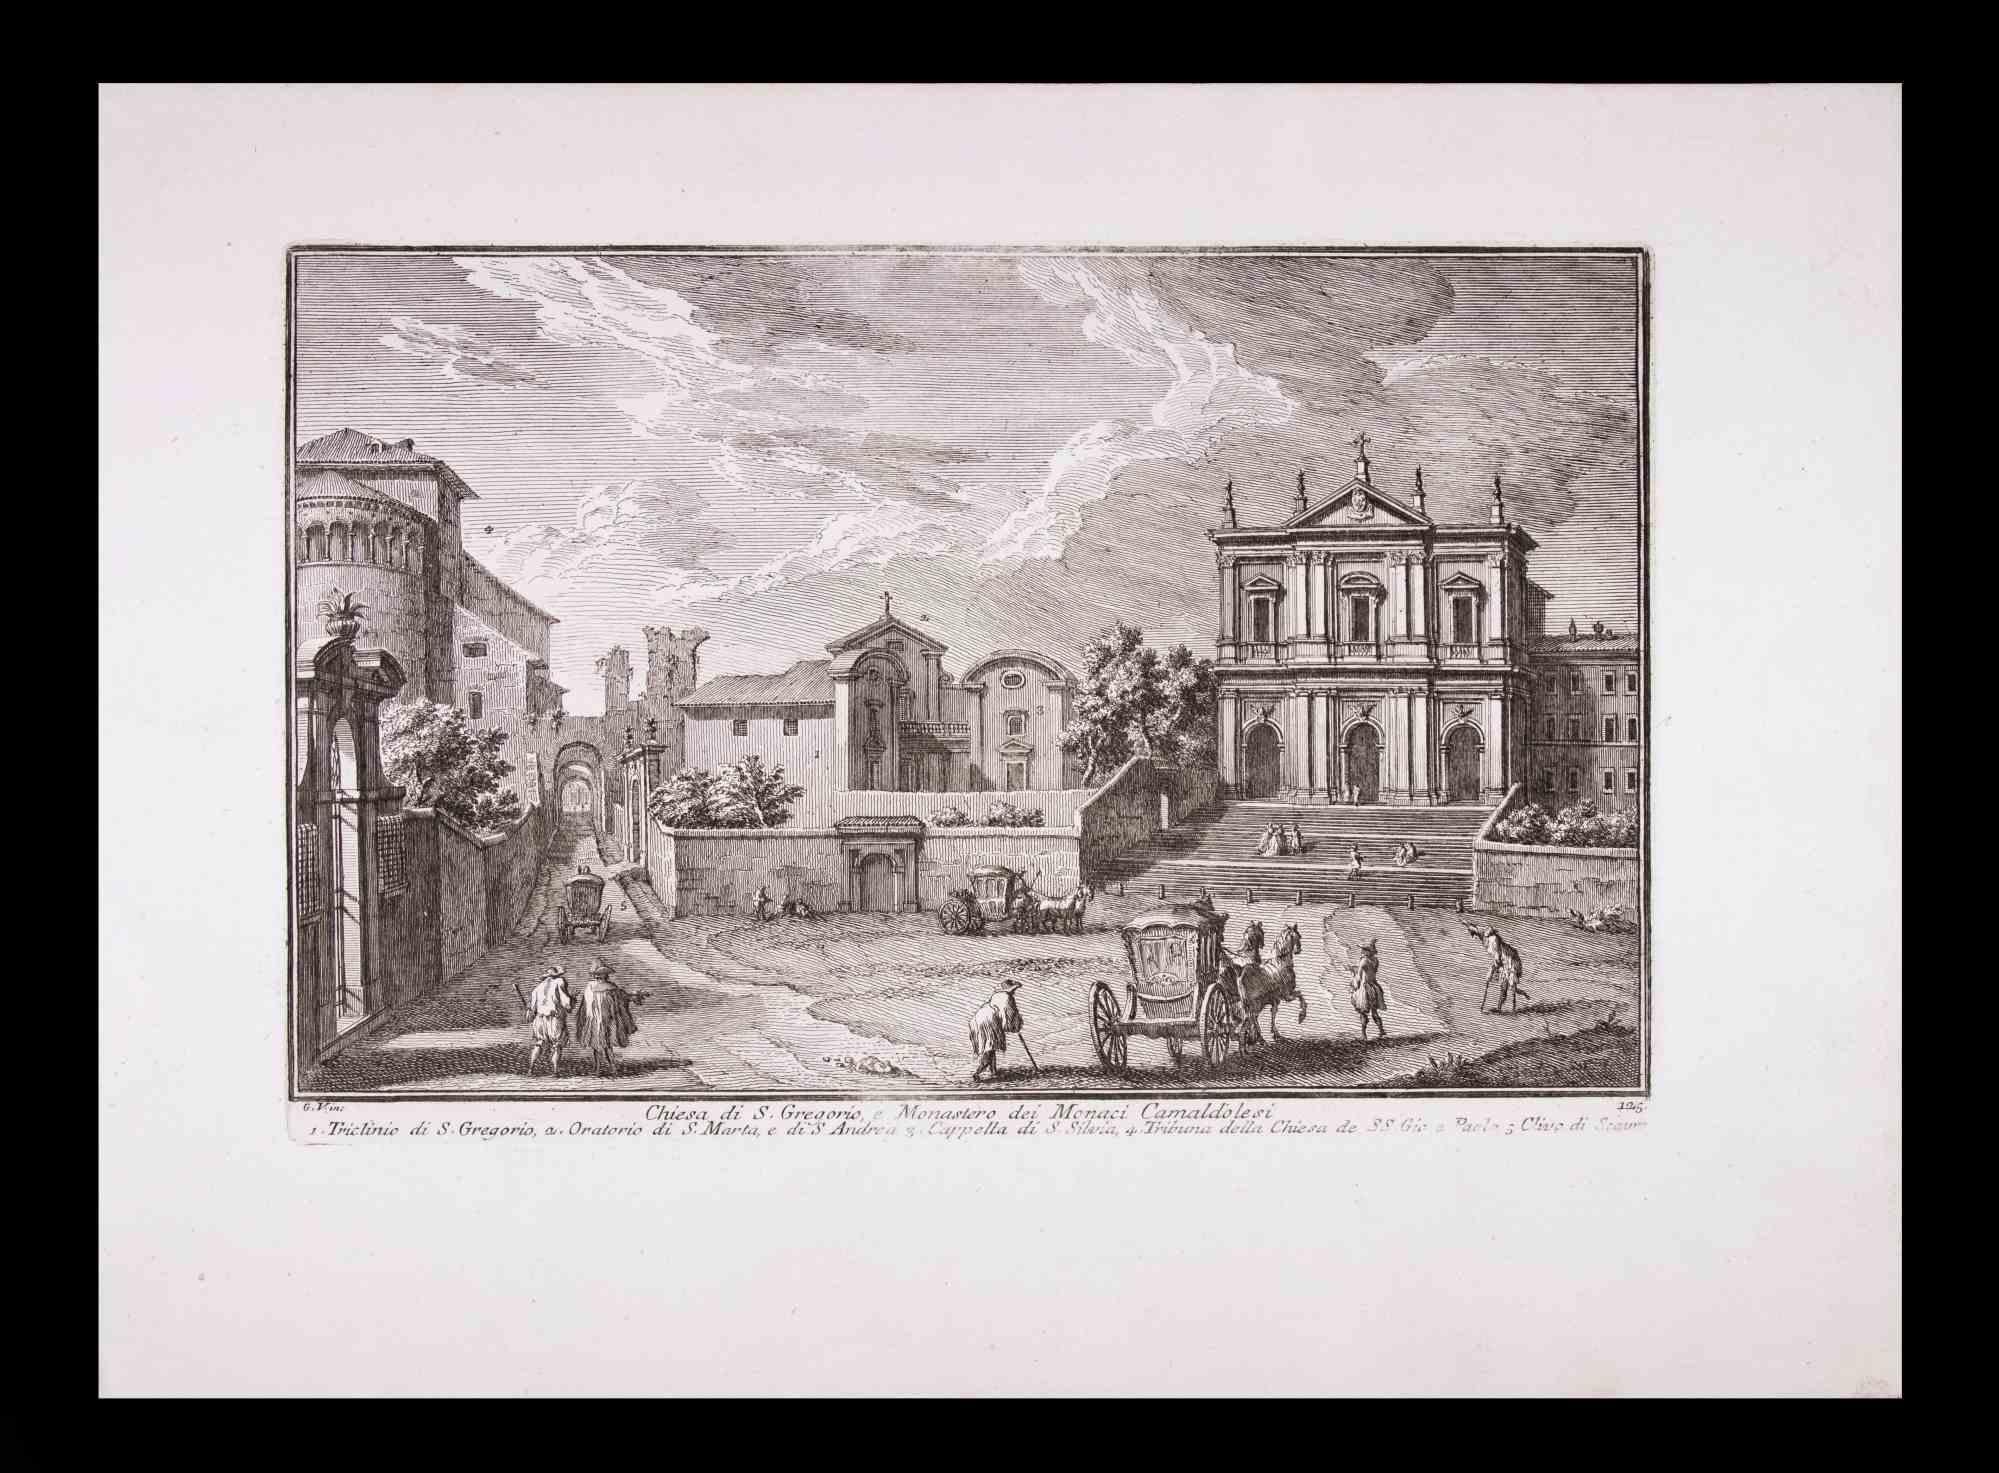 Chiesa Di S. Giorgio ist eine Original-Schwarz-Weiß-Radierung aus dem späten 18. Jahrhundert von Giuseppe Vasi.

Die schöne Radierung zeigt einen Blick auf Rom.

Signiert und betitelt am unteren Rand der Platte.

Gute Bedingungen.

Giuseppe Vasi 